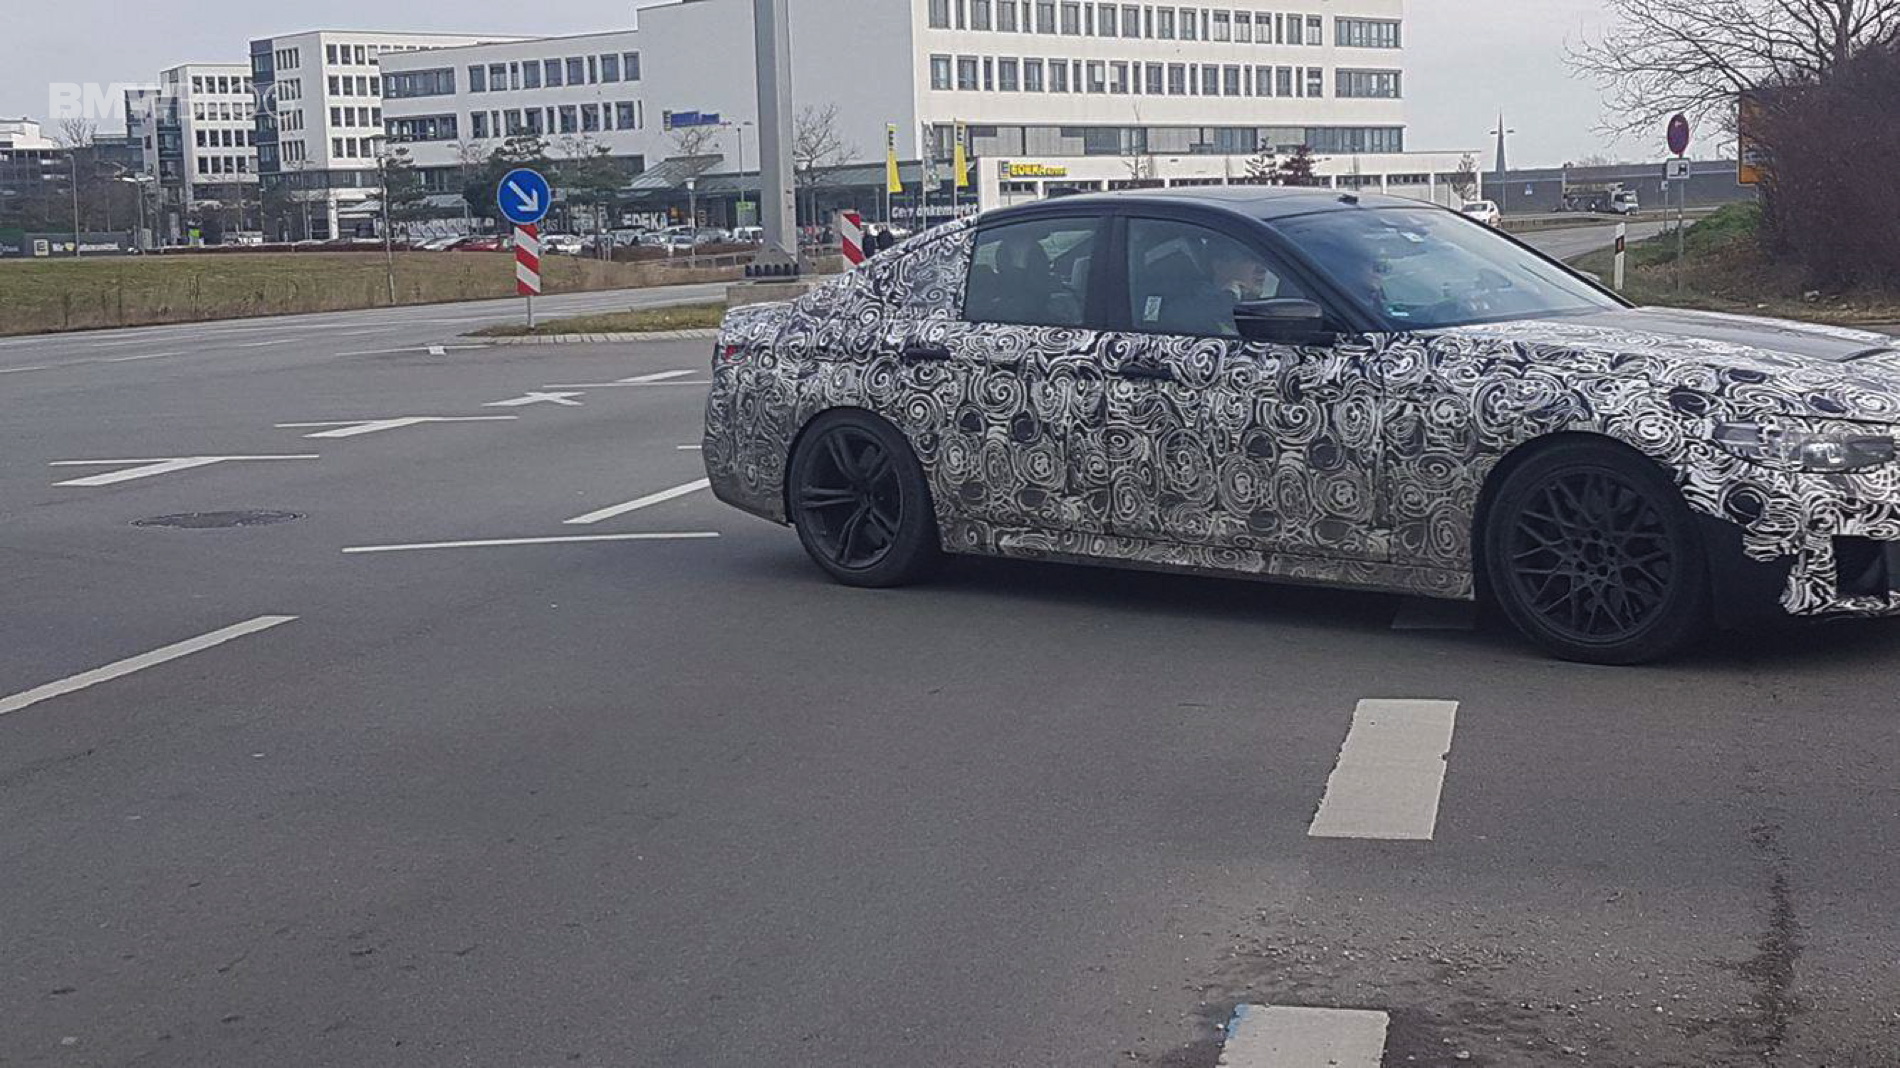 Spied: 2018 F90 BMW M5 in Munich